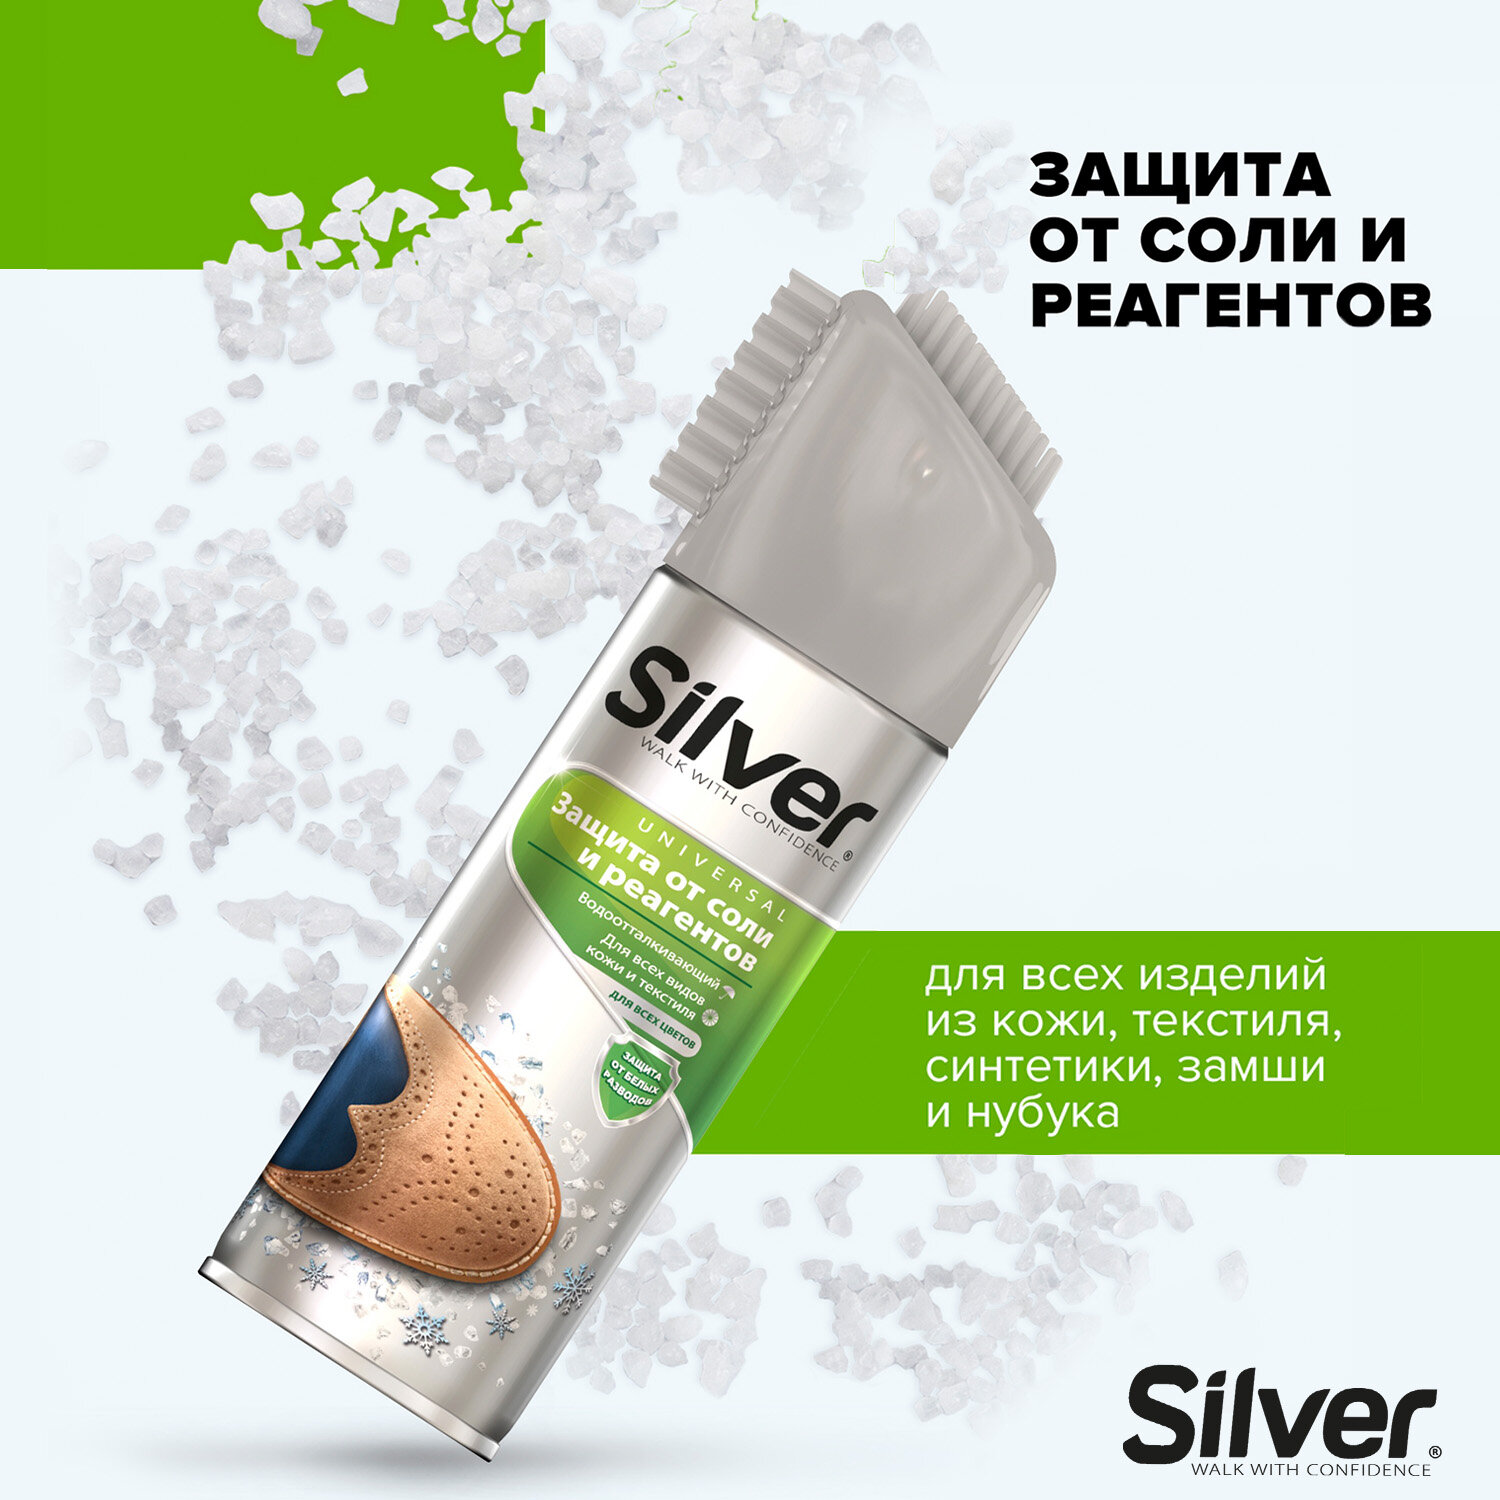 Спрей защита от соли и реагентов Silver для всех цветов, видов кожи и текстиля, 250 мл